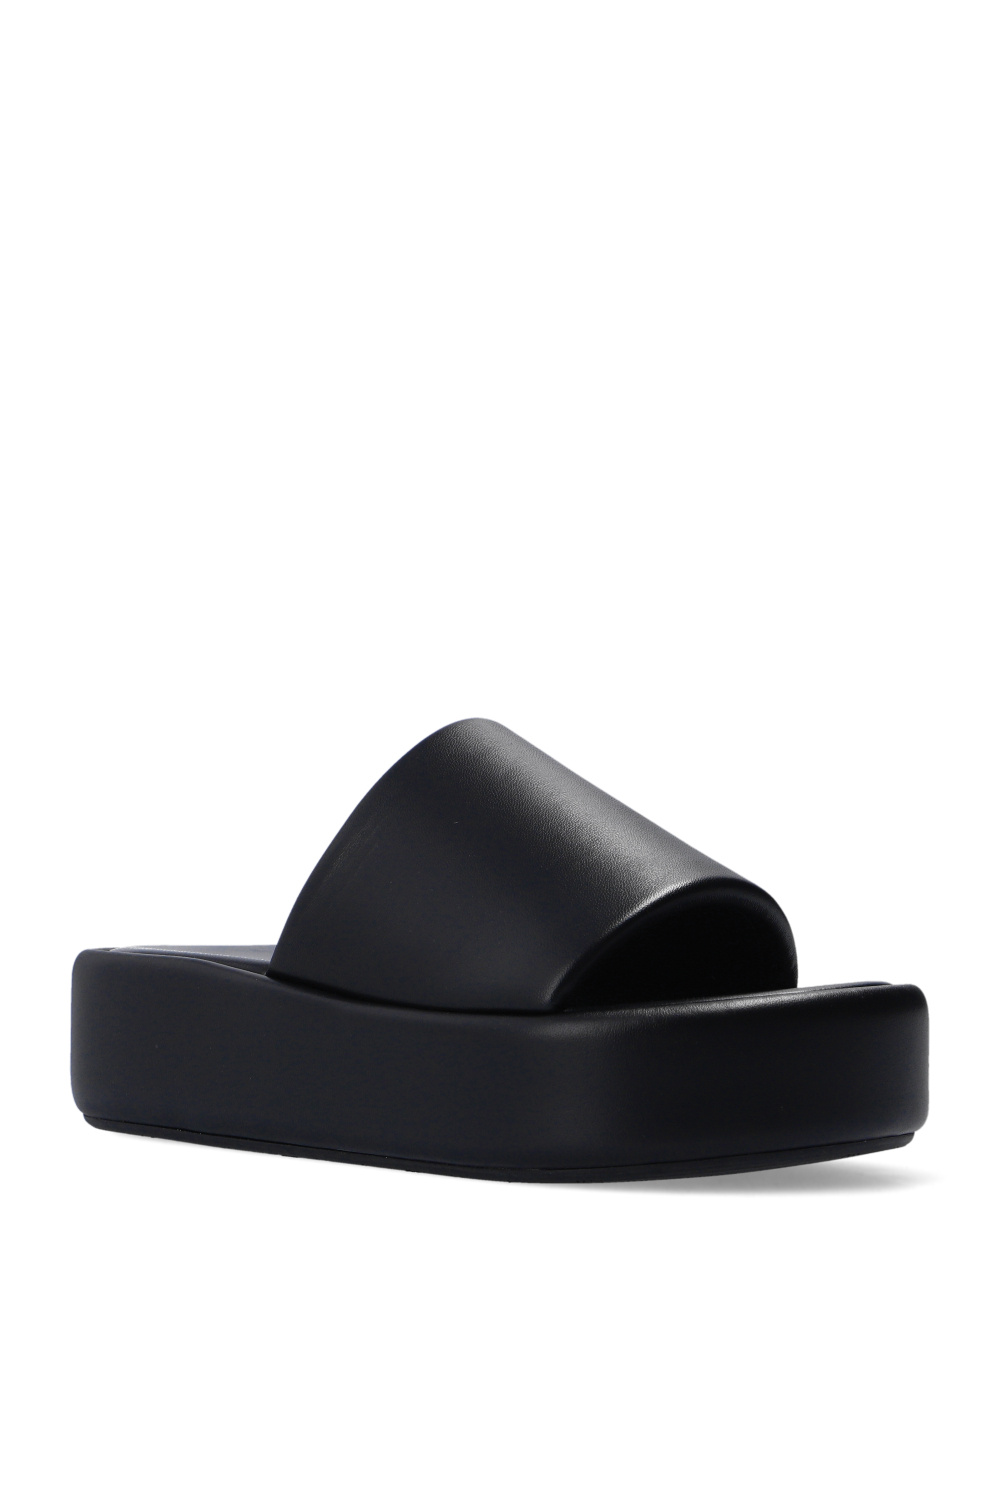 Balenciaga ‘Rise’ leather slides